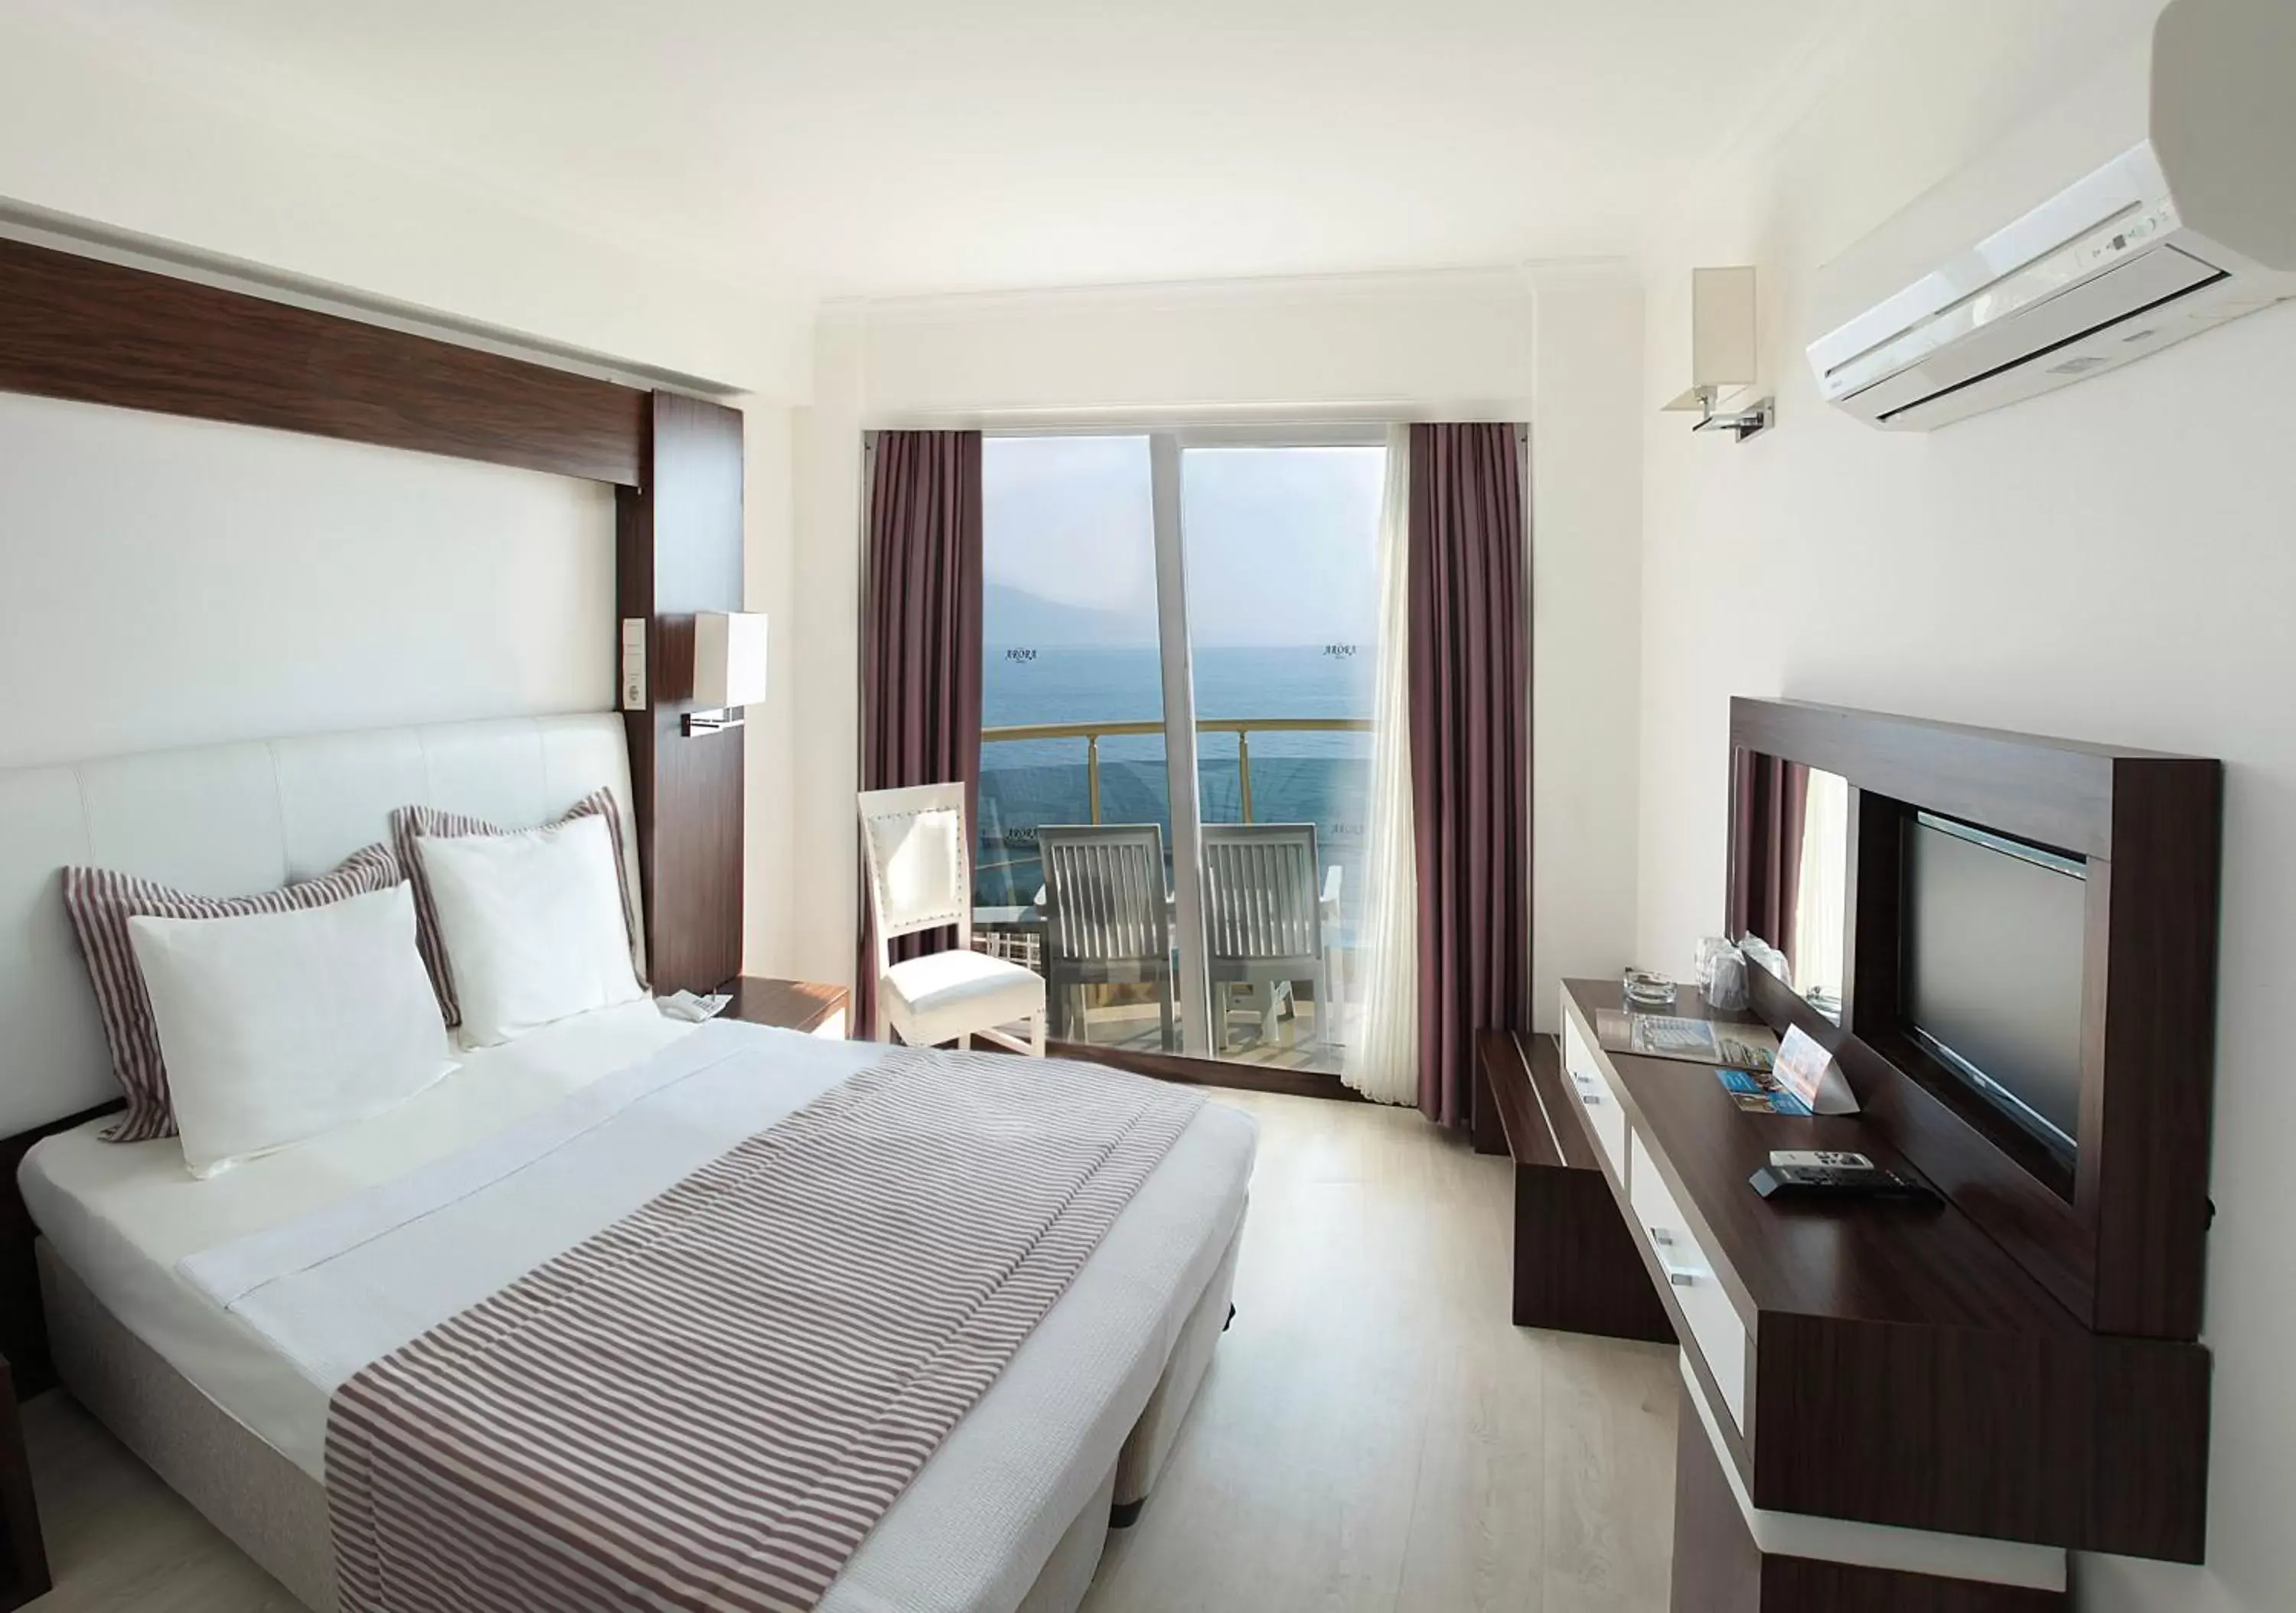 Sea view in Arora Hotel